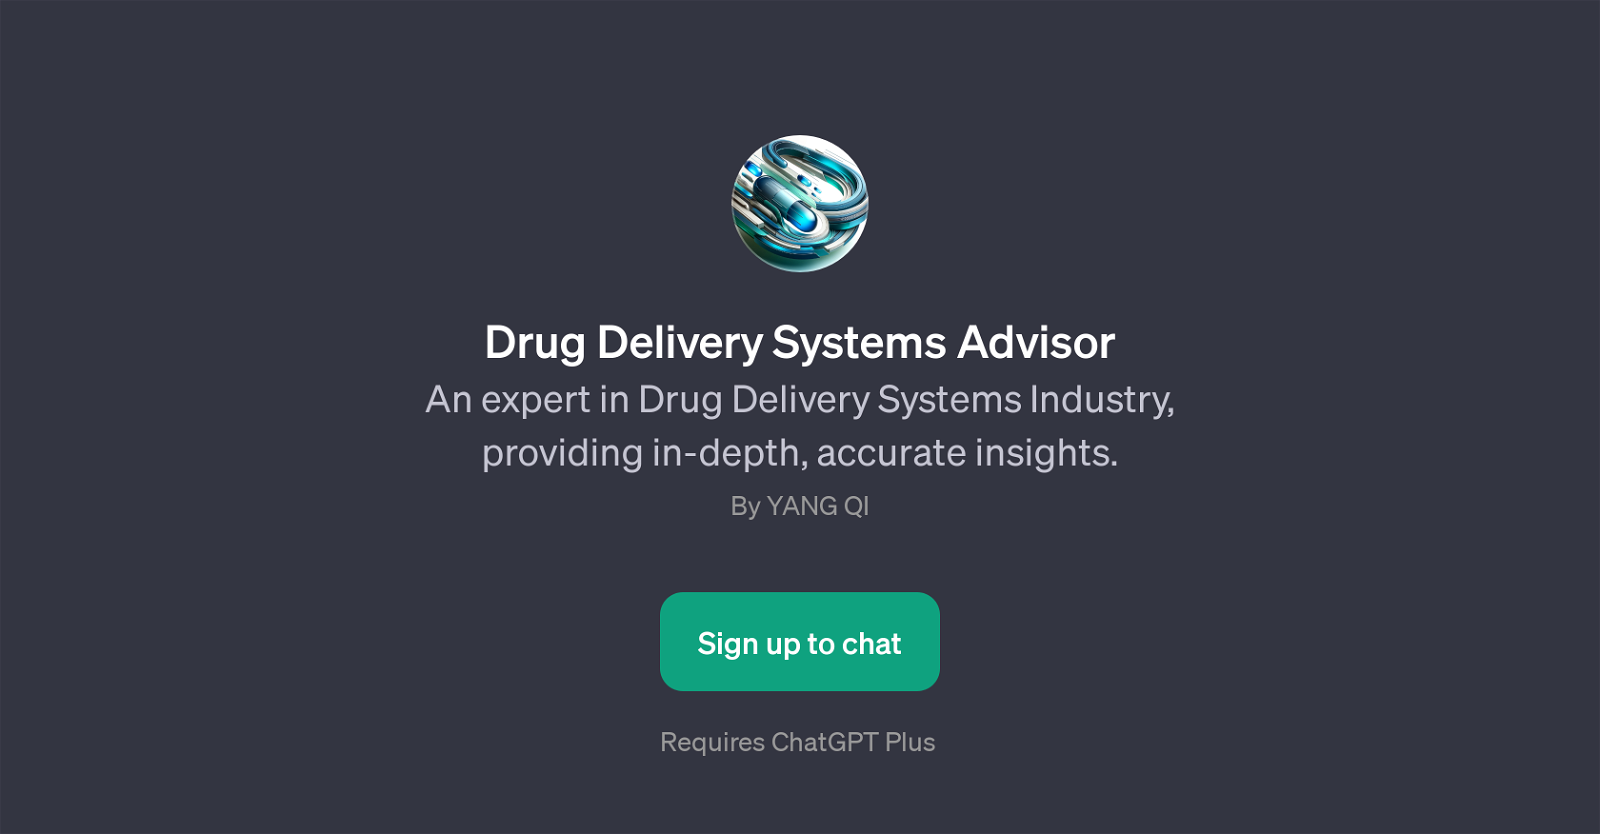 Drug Delivery Systems Advisor website